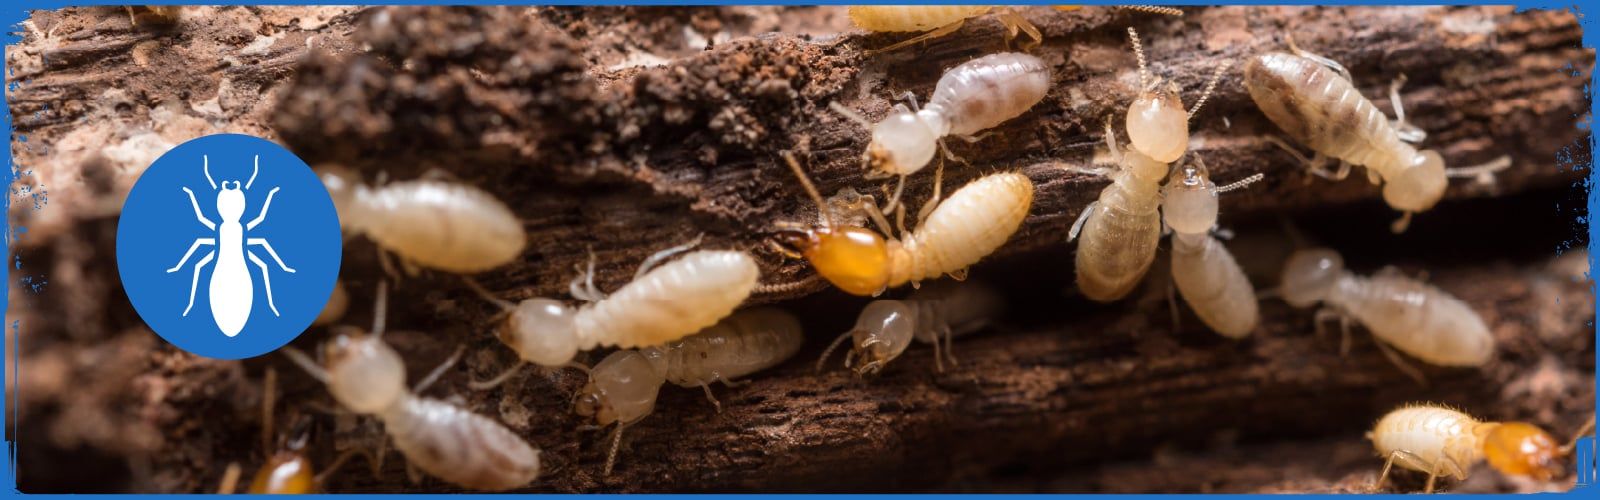 termite control in Arizona